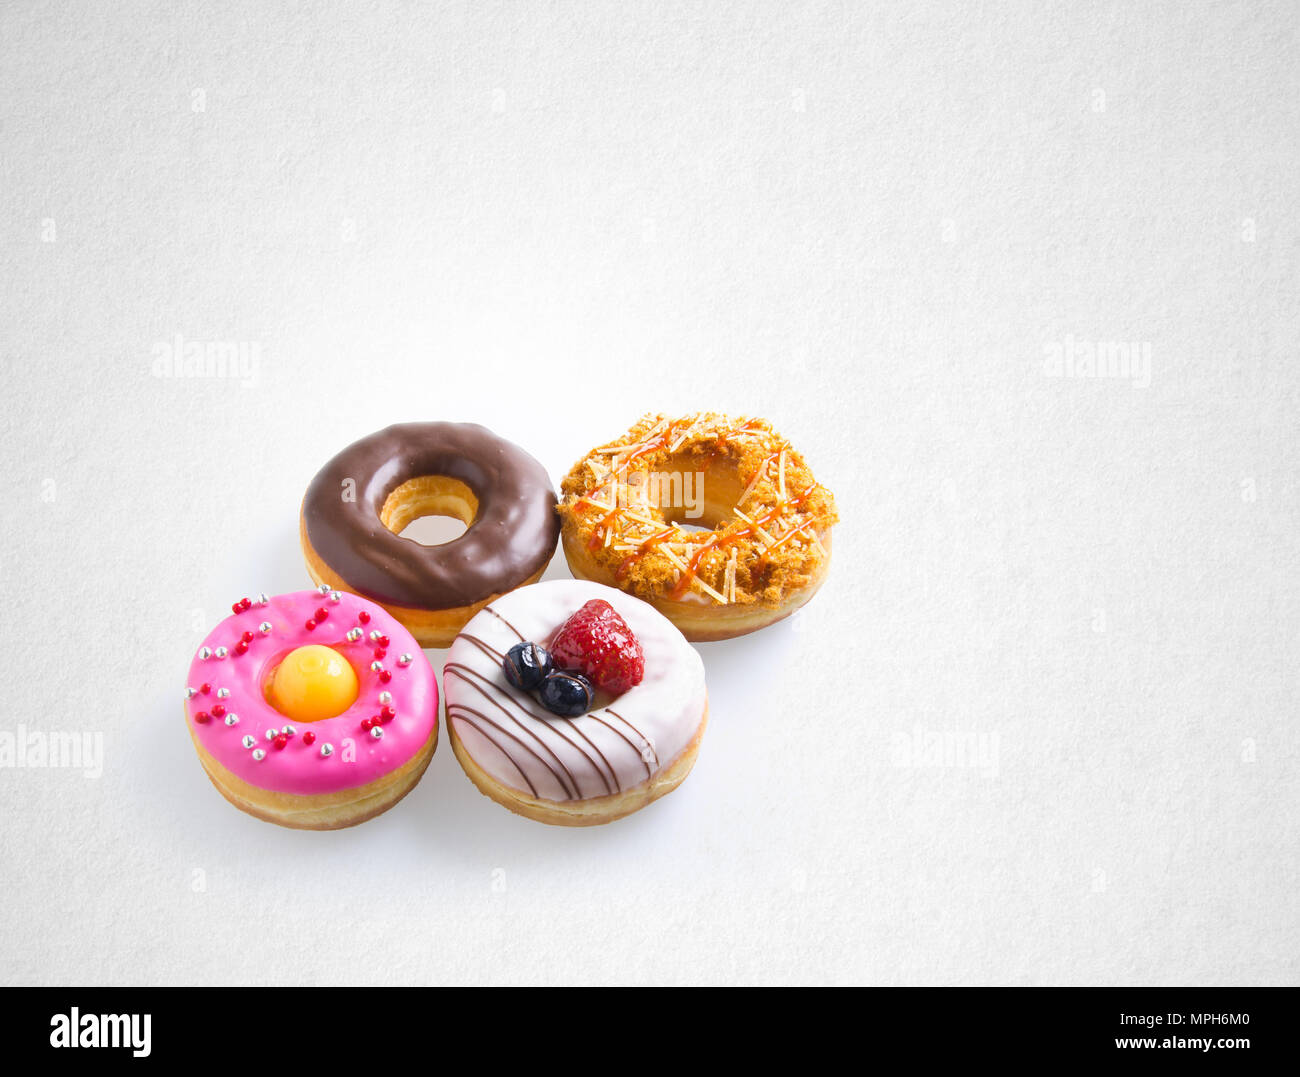 Donut oder verschiedene Donuts auf einem Hintergrund Stockfoto